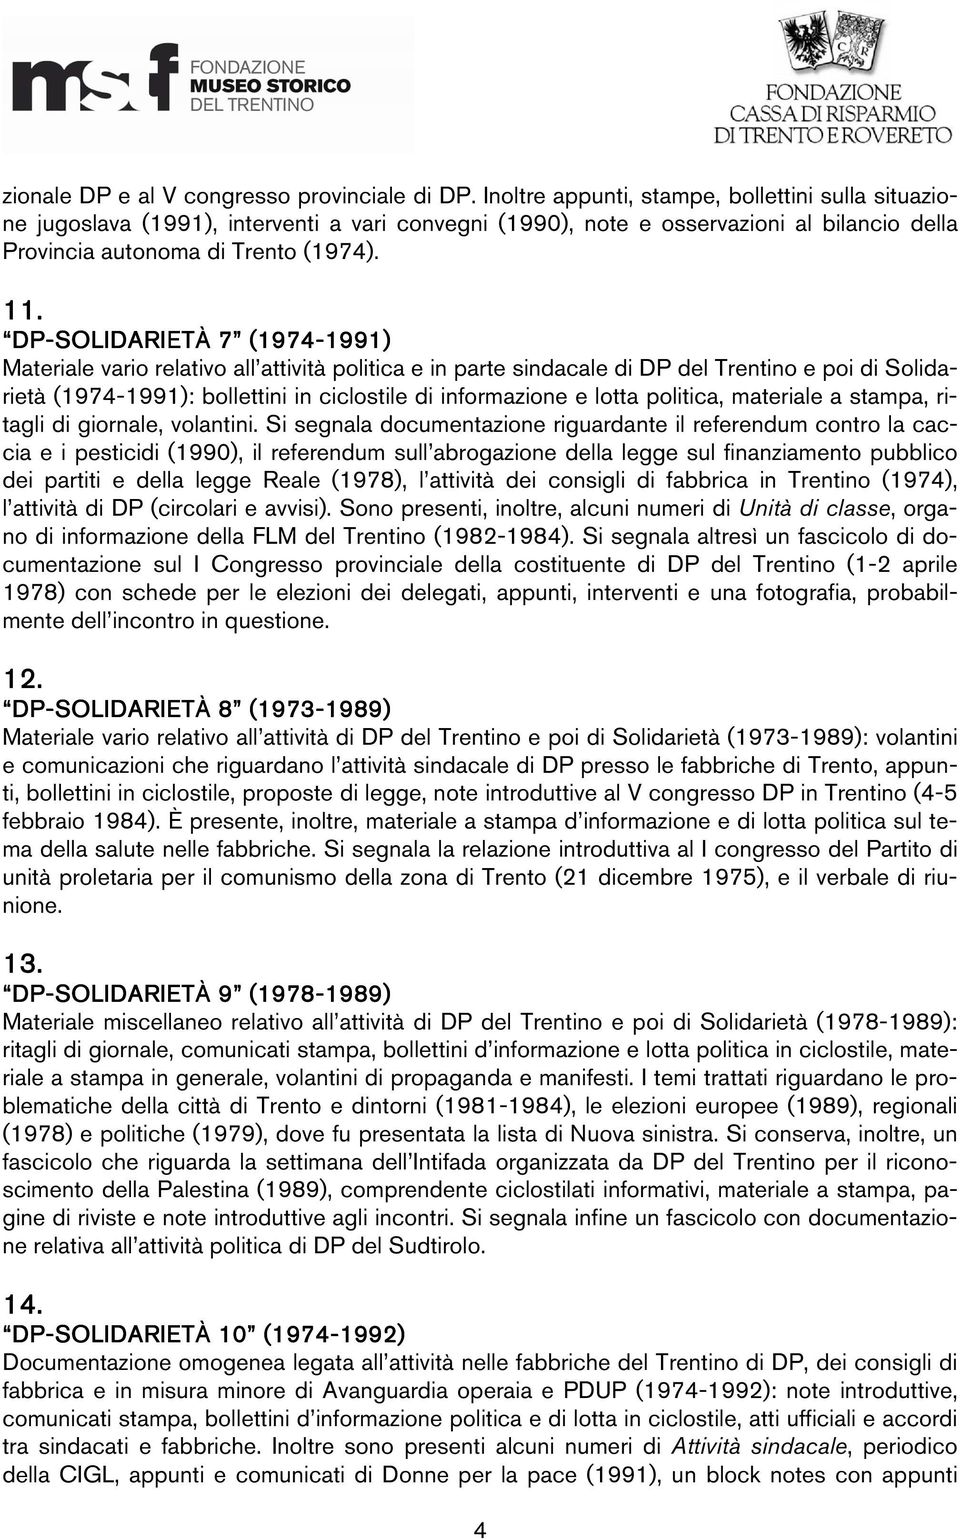 DP-SOLIDARI SOLIDARIET ETÀ 7 (1974- Materiale vario relativo all attività politica e in parte sindacale di DP del Trentino e poi di Solidarietà (1974-: bollettini in ciclostile di informazione e